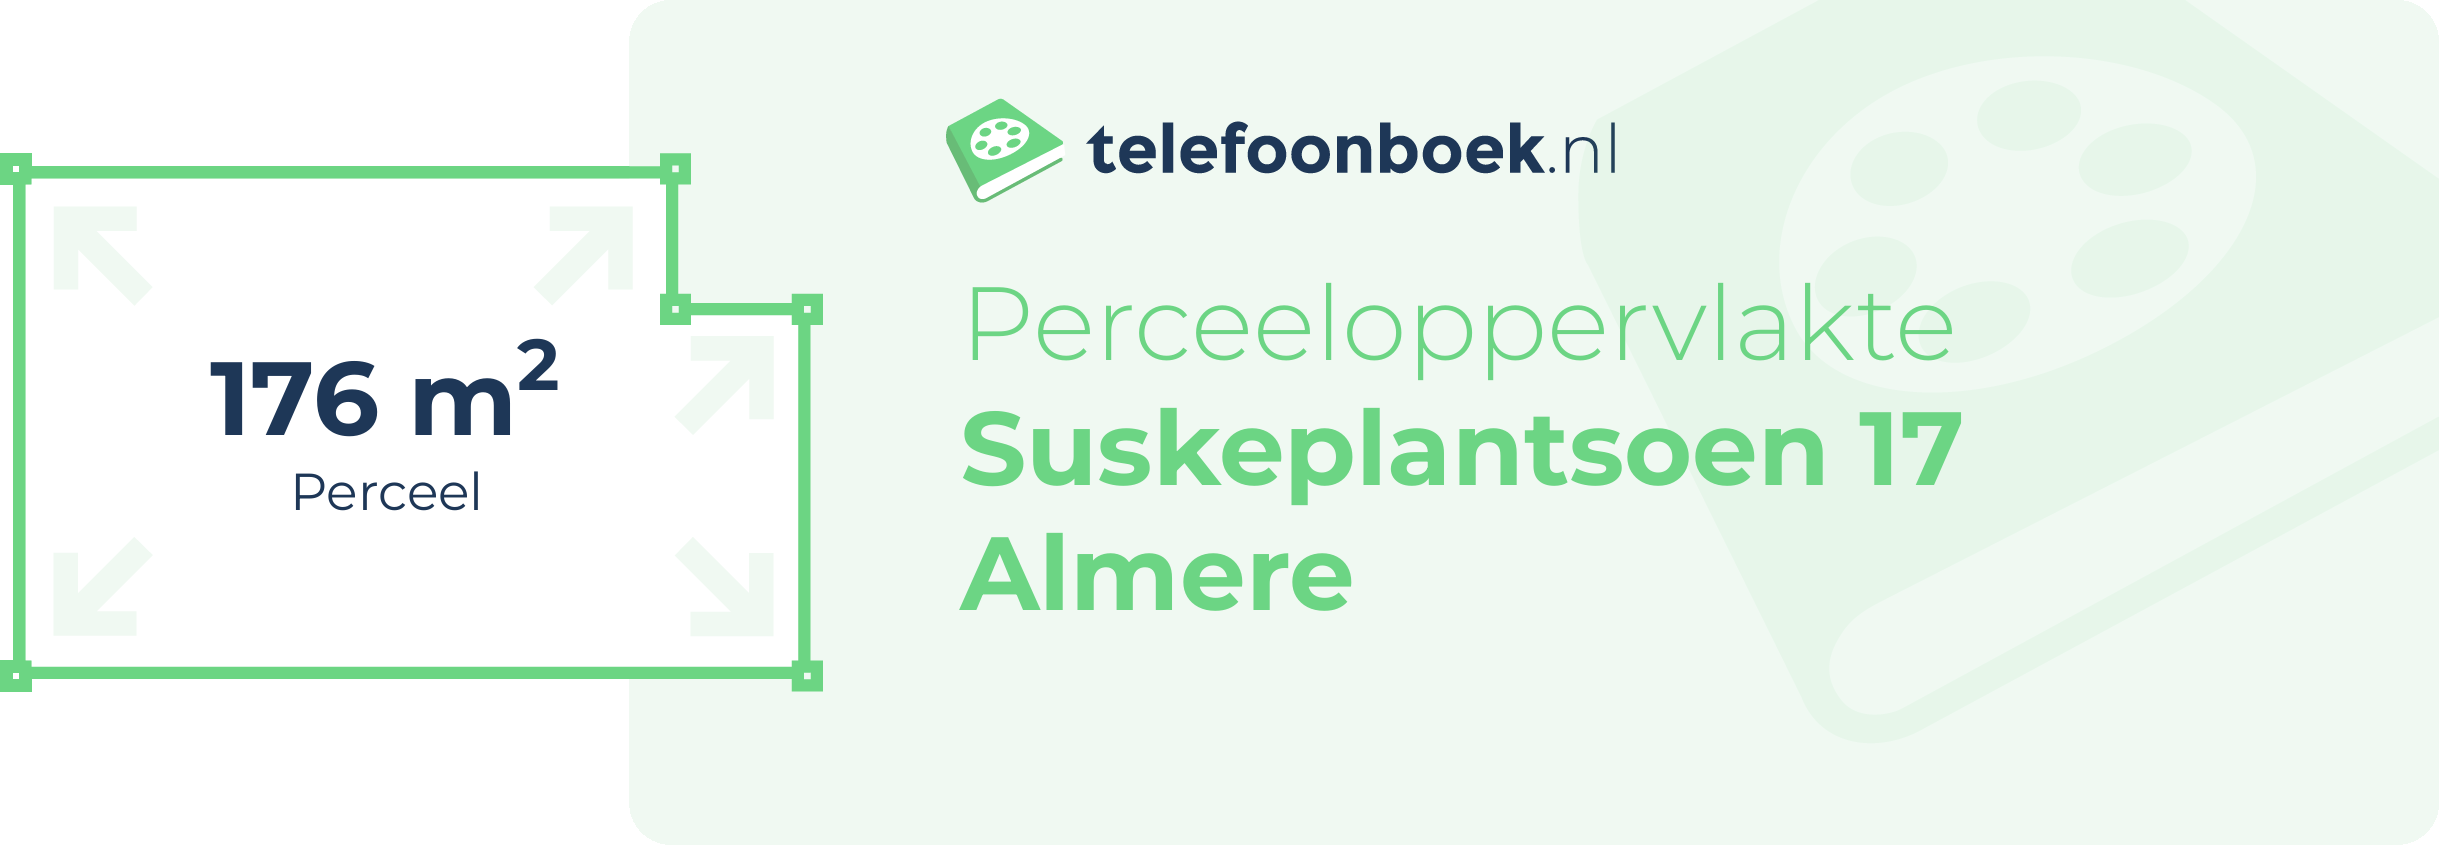 Perceeloppervlakte Suskeplantsoen 17 Almere